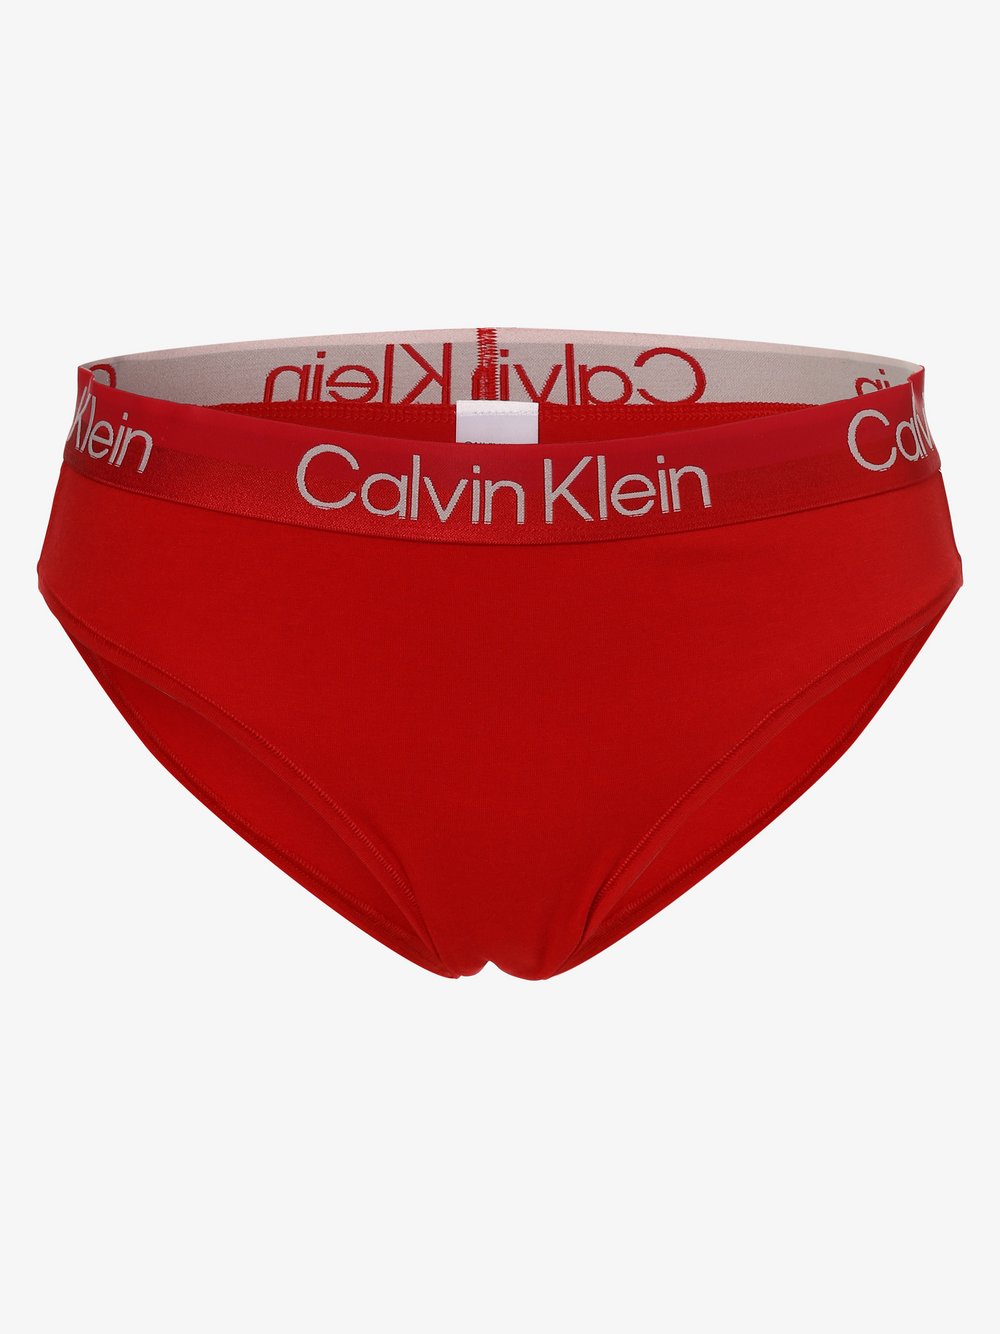 Calvin Klein - Slipy damskie, czerwony